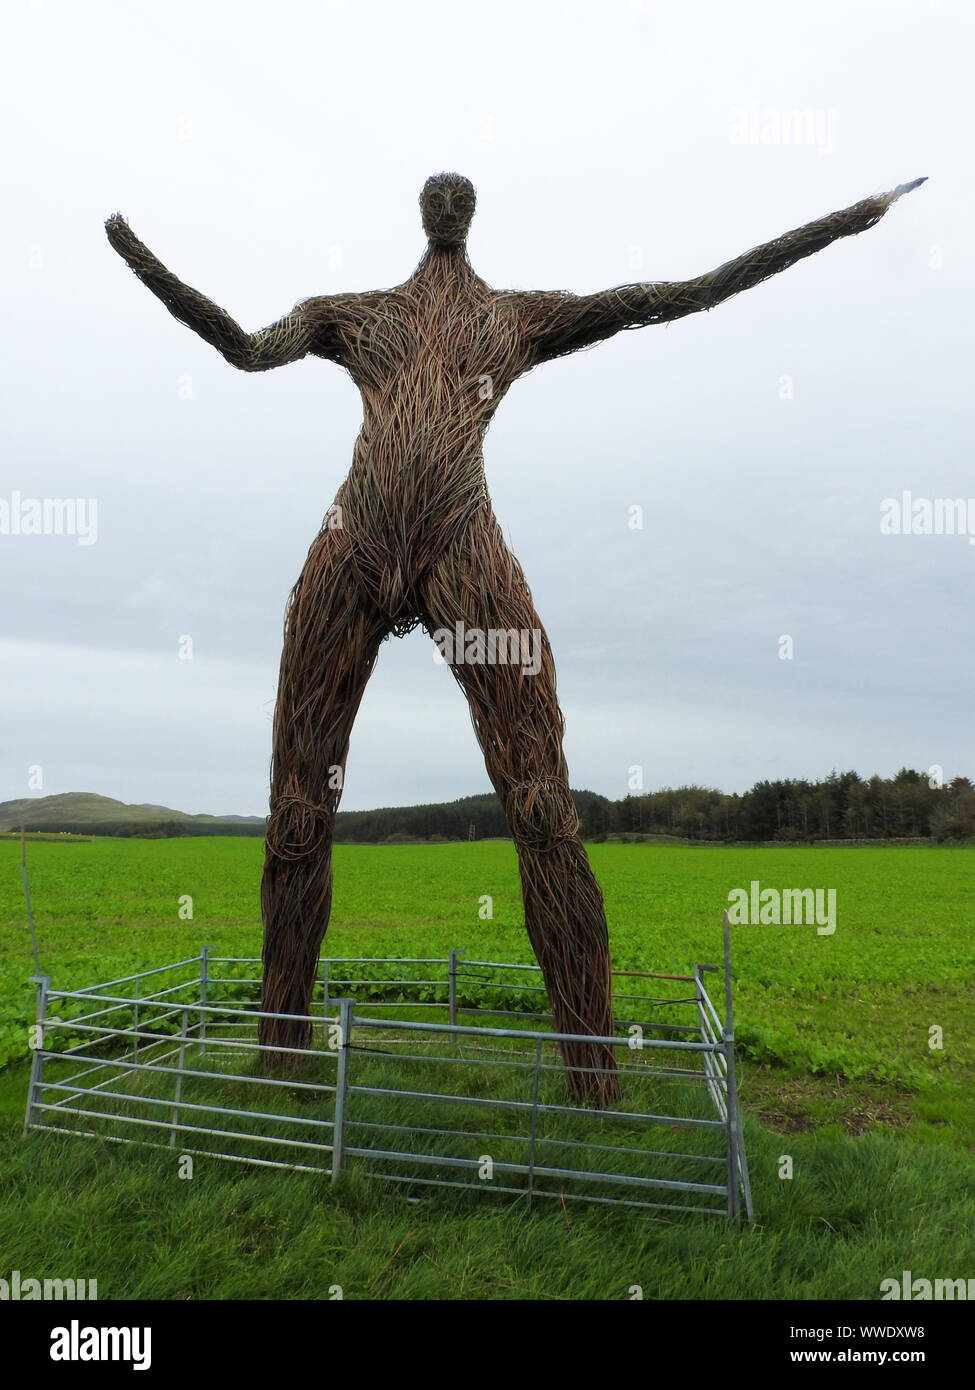 2019 image- una vista de la nueva y enorme Wickerman Festival Wickerman figura en el campo cerca de Dunfrennan, Dumfries y Galloway. (Rodeada por una valla de agricultores normal) Foto de stock